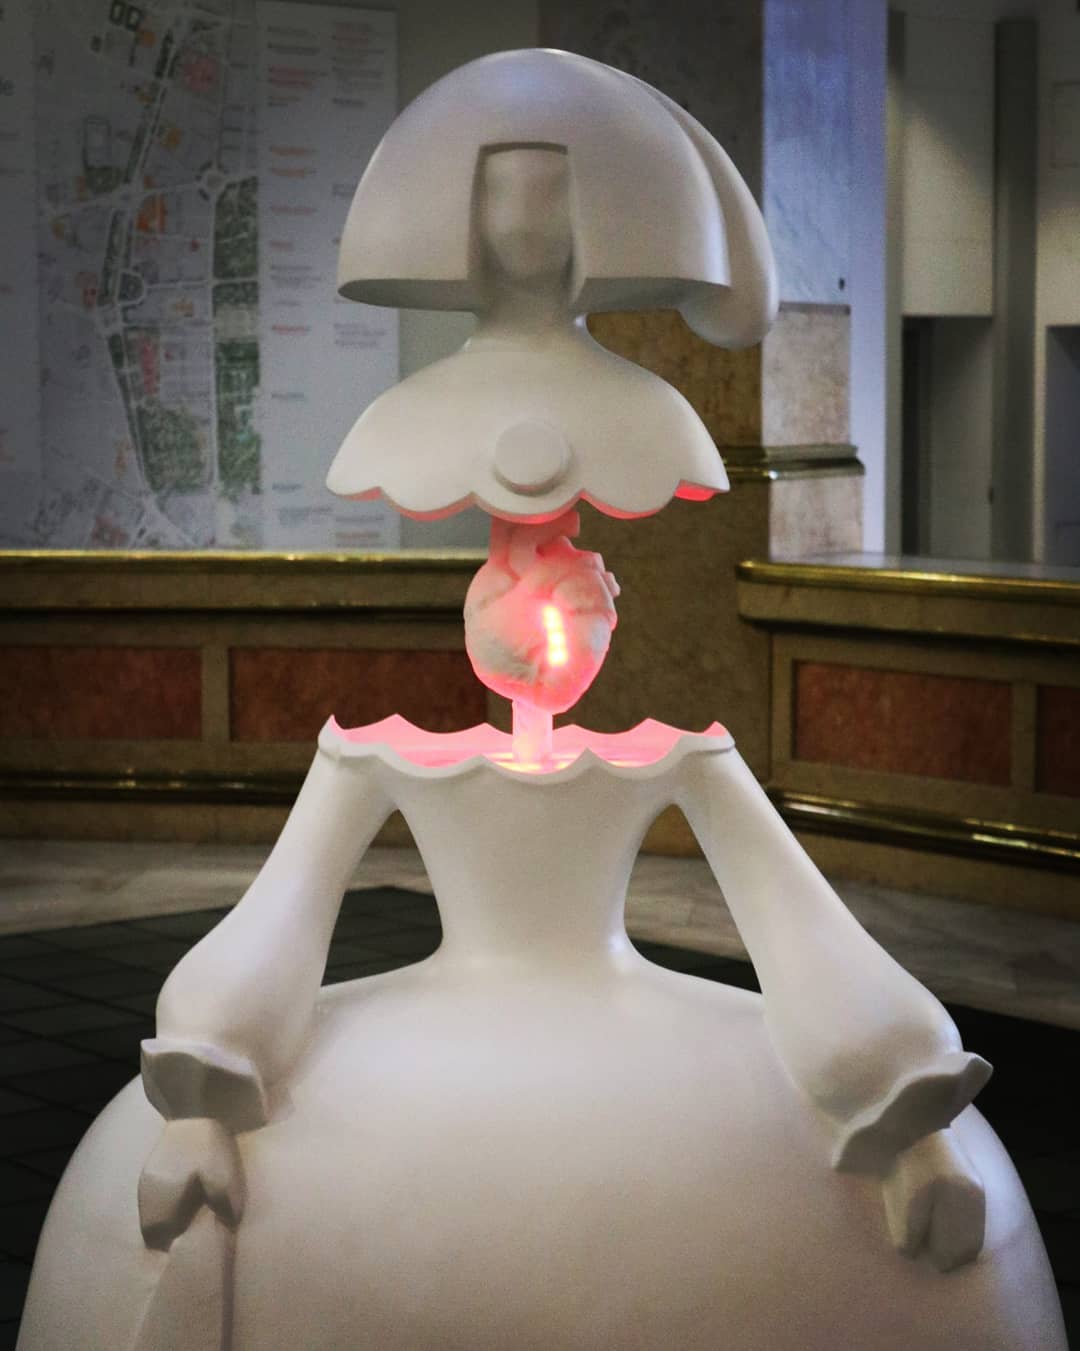 Se instala la menina “inteligente”, una escultura capaz de expresar emociones humanas en tiempo real